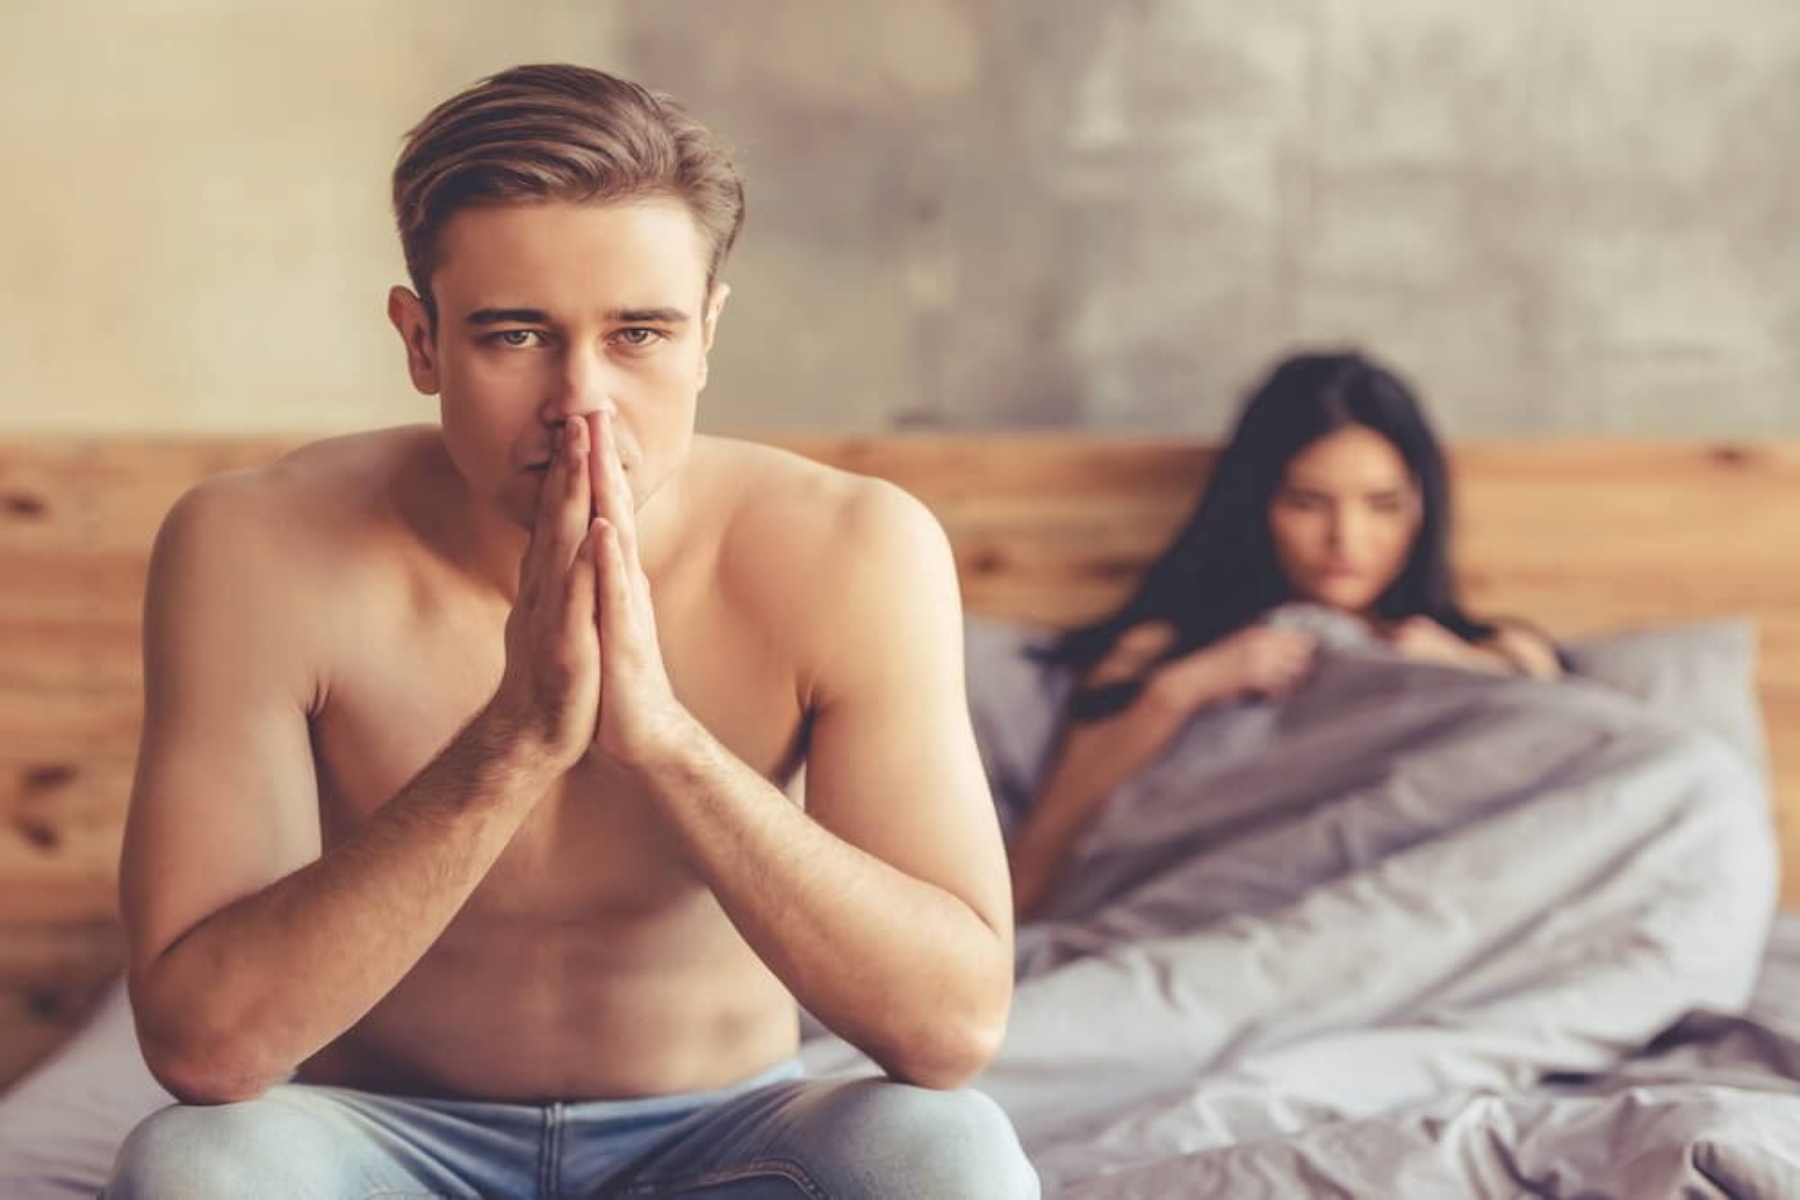 Σχέση: 5 Λόγοι που ο σύντροφός σας αποφεύγει την σεξουαλική επαφή